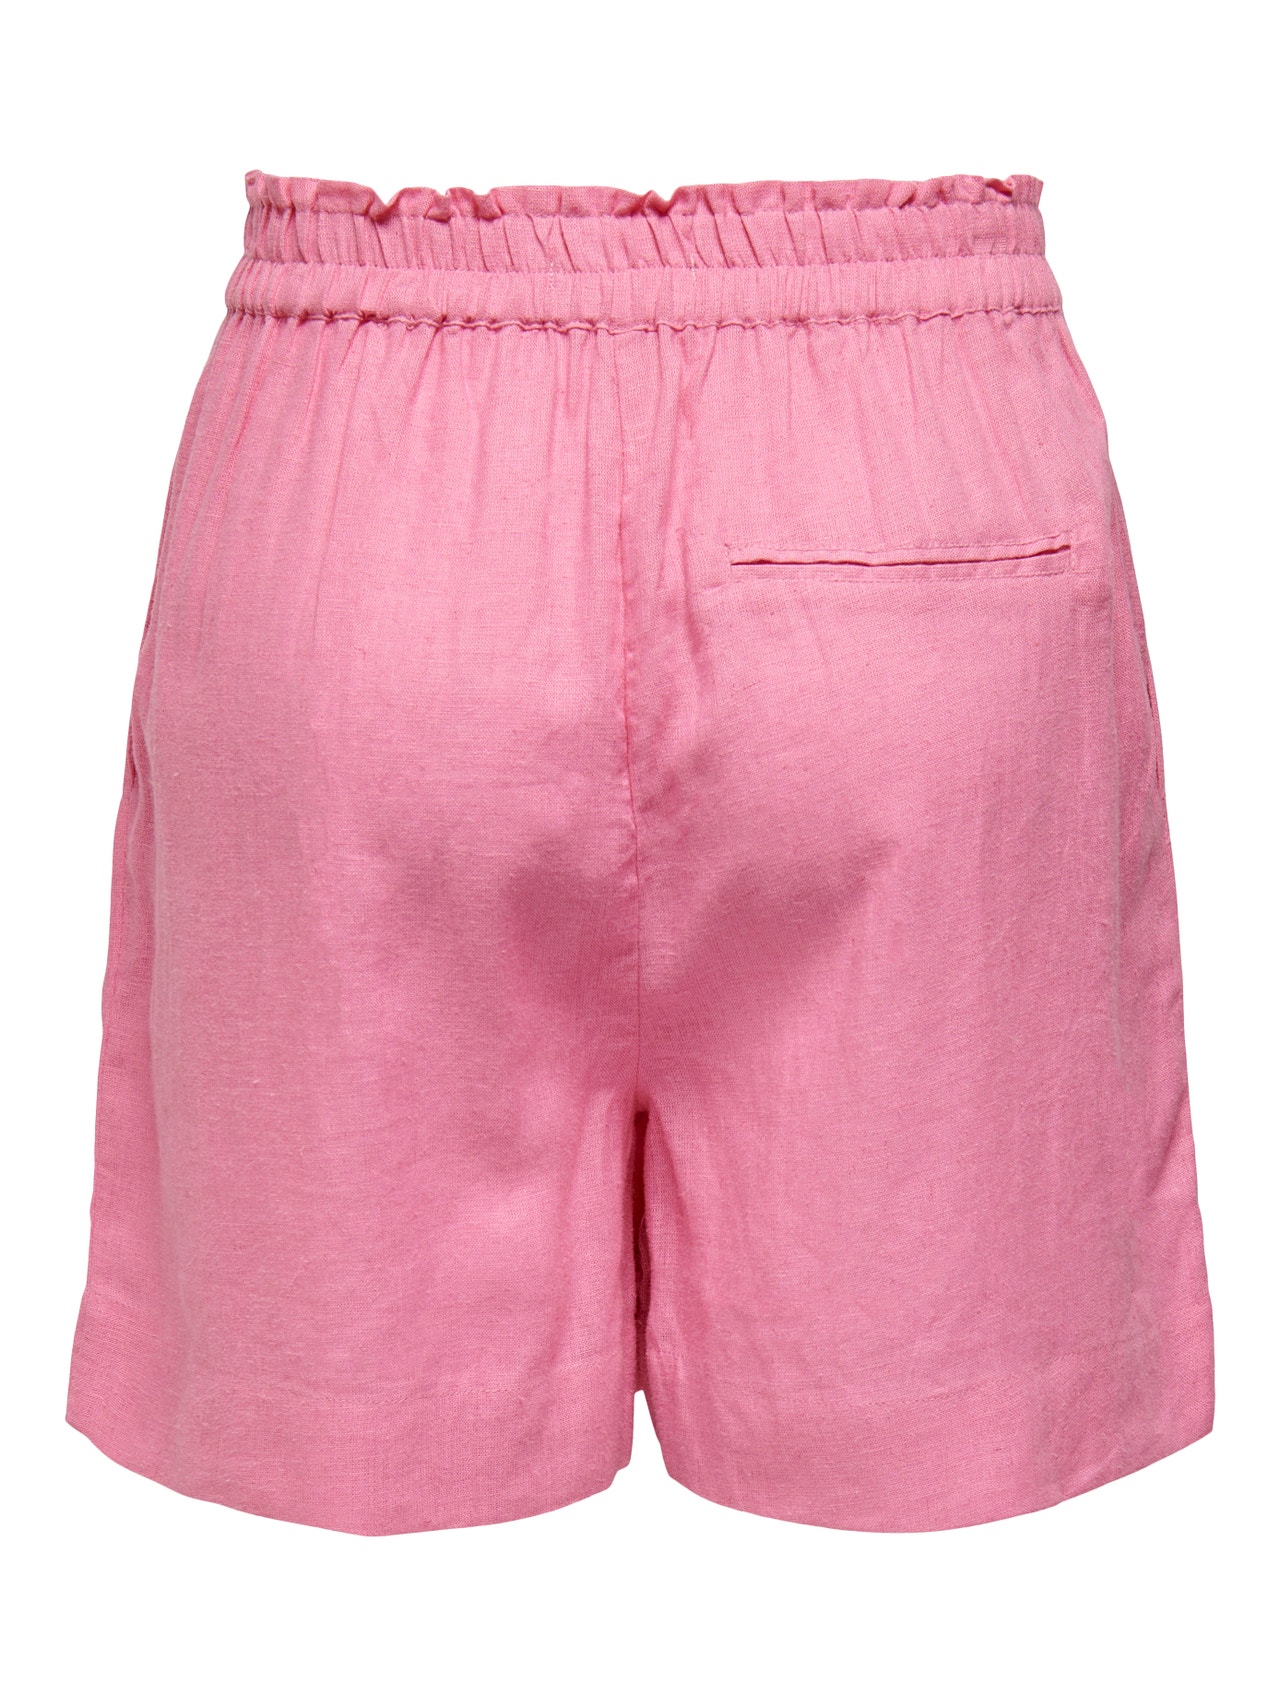 ONLY Høy midje linblanding Shorts -Sachet Pink - 15259587